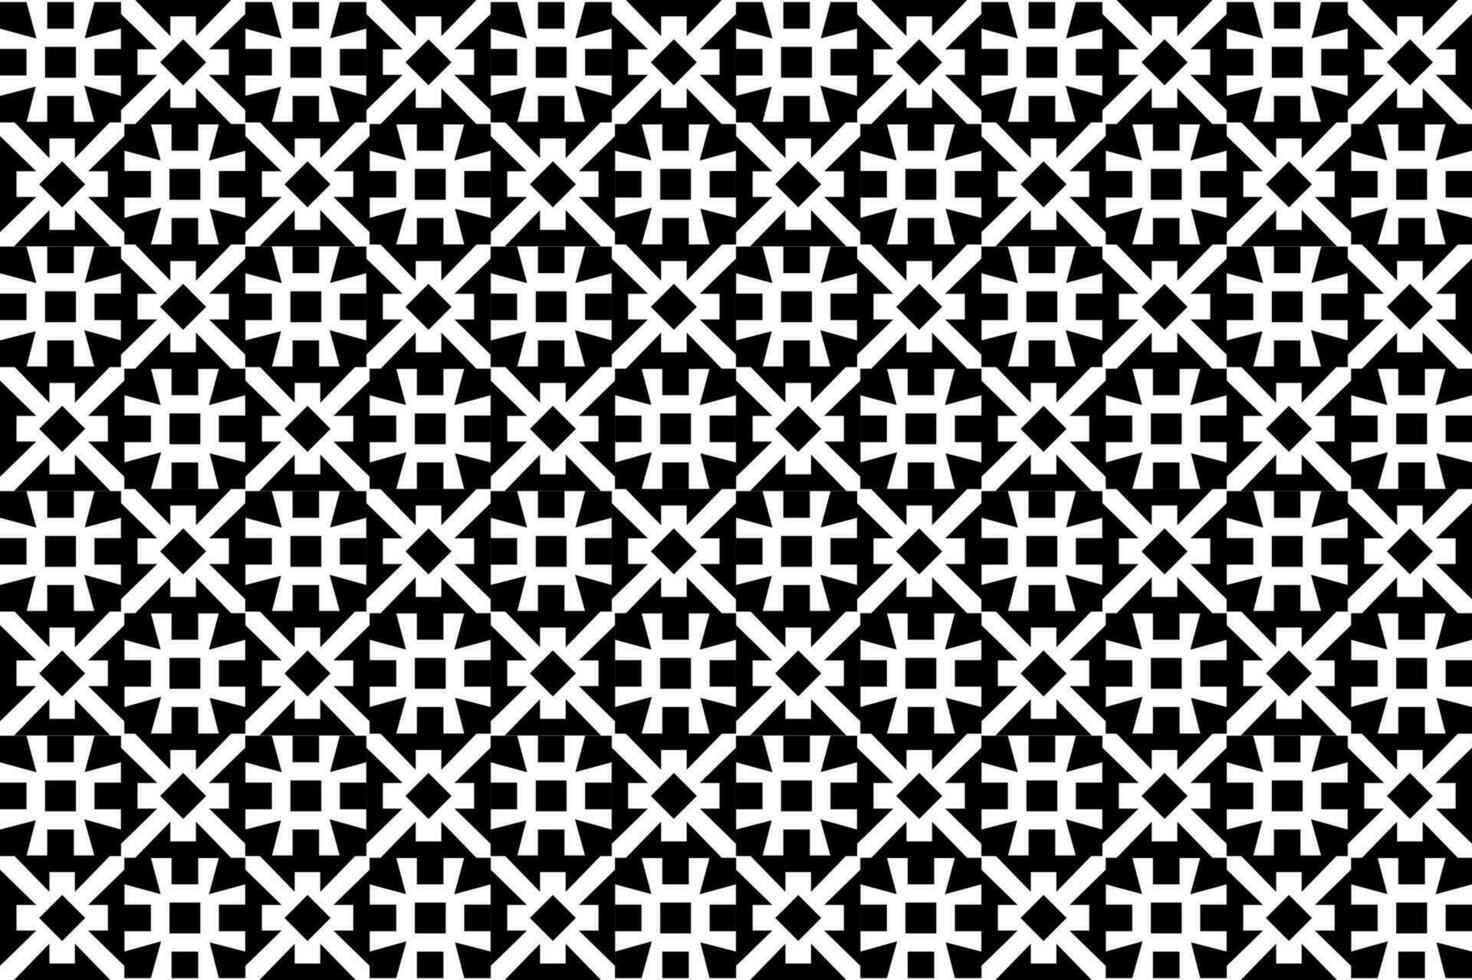 abstrakt svart och vit, svartvit mönster. sömlös, repeterbar geometrisk mönster. modern abstrakt design för tapeter, täcker, textil- och Övrig projekt. vektor